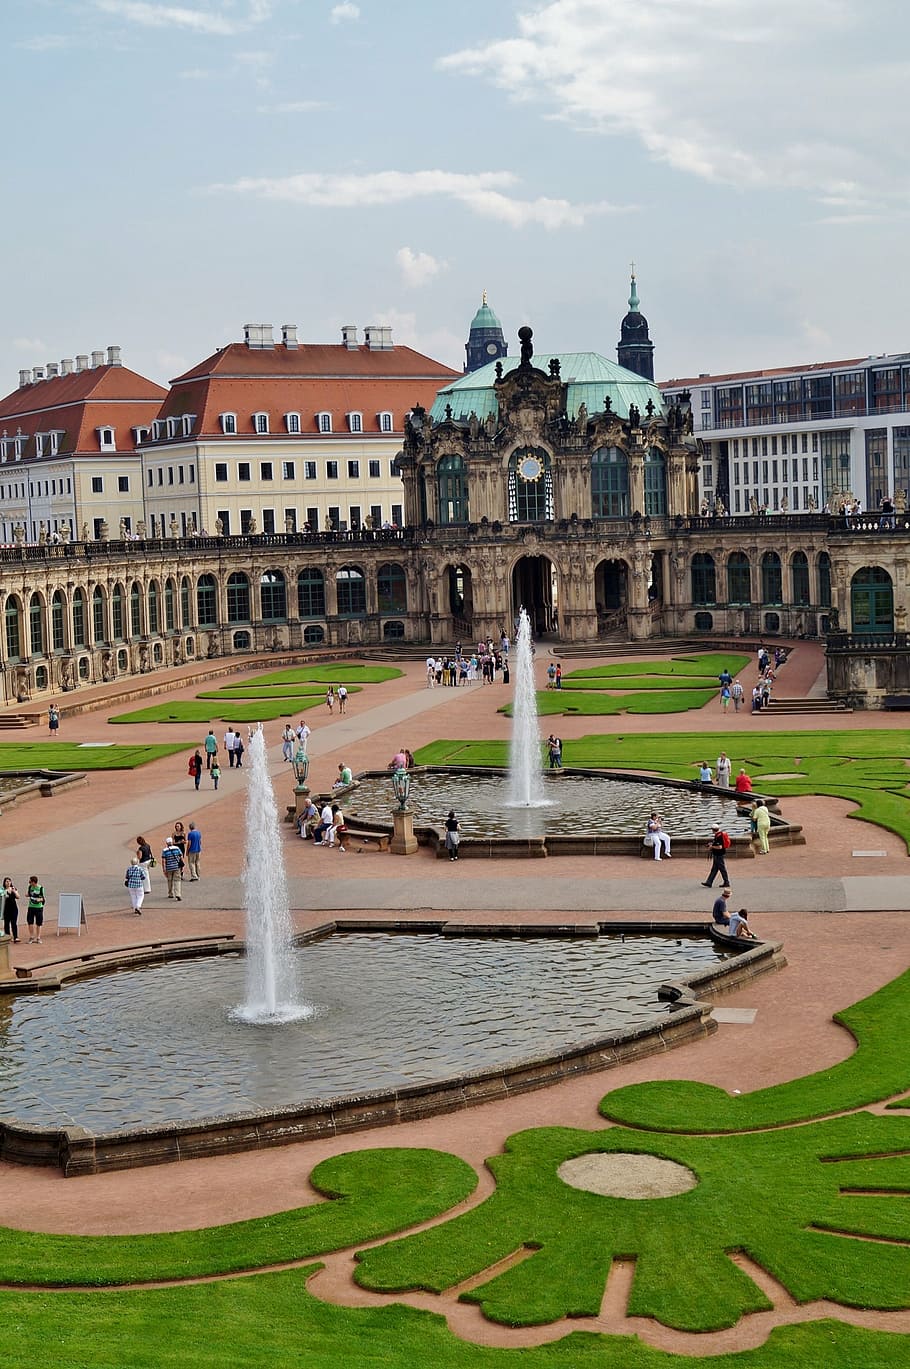 ドレスデン, ツヴィンガー宮殿, 公園, 噴水, 歴史, 古い建物, 建築, 有名な場所, ヨーロッパ, 町の広場